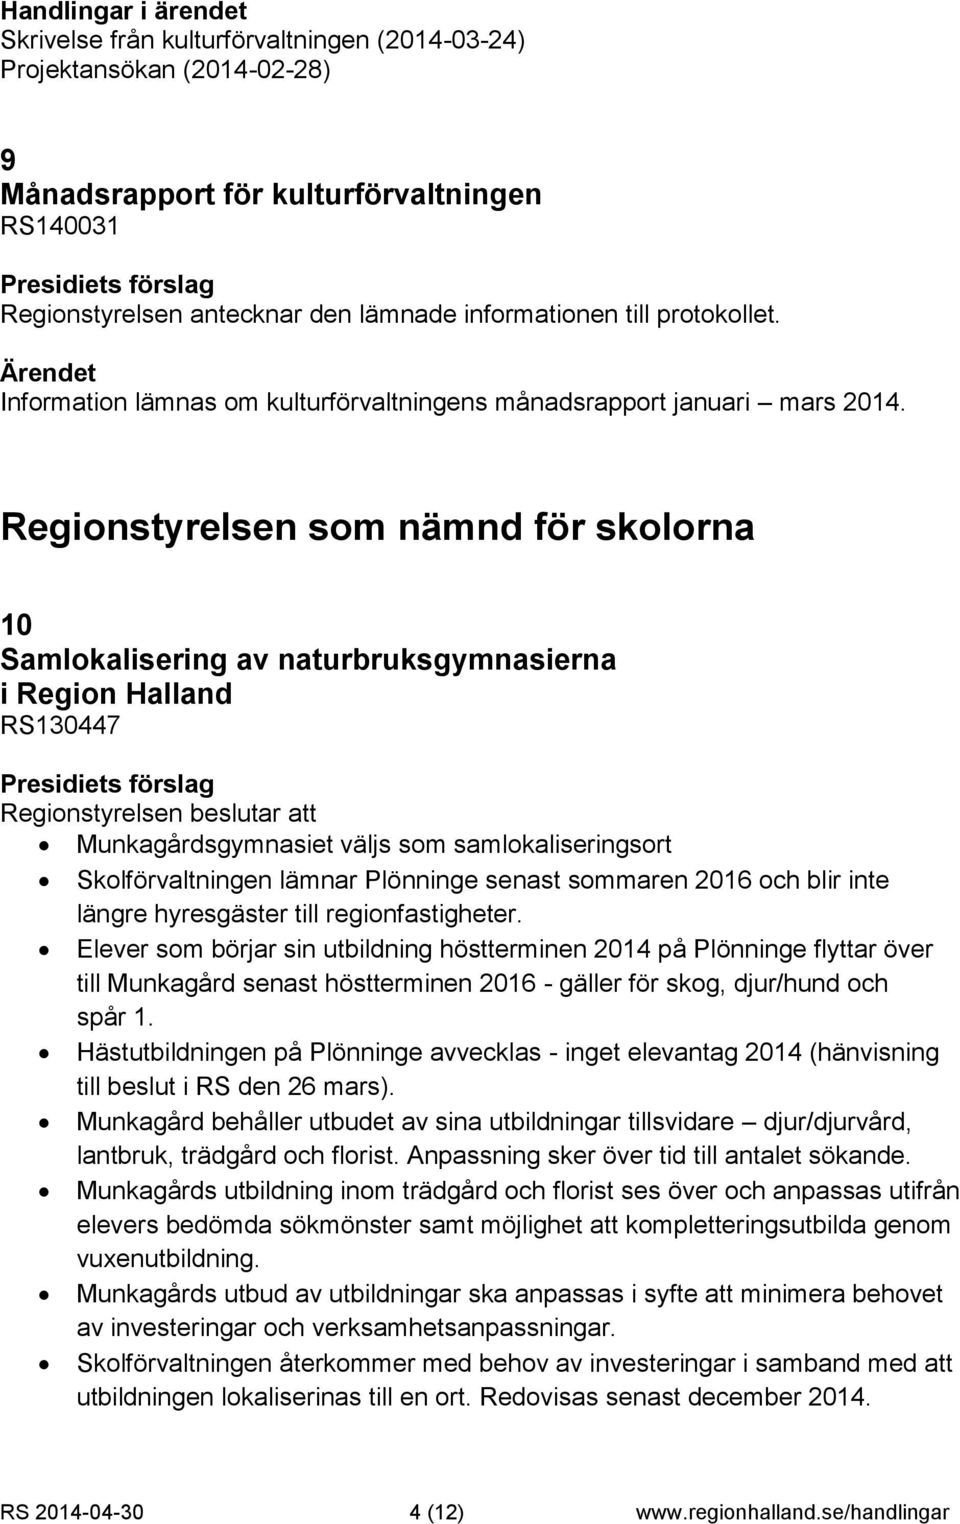 Skolförvaltningen lämnar Plönninge senast sommaren 2016 och blir inte längre hyresgäster till regionfastigheter.